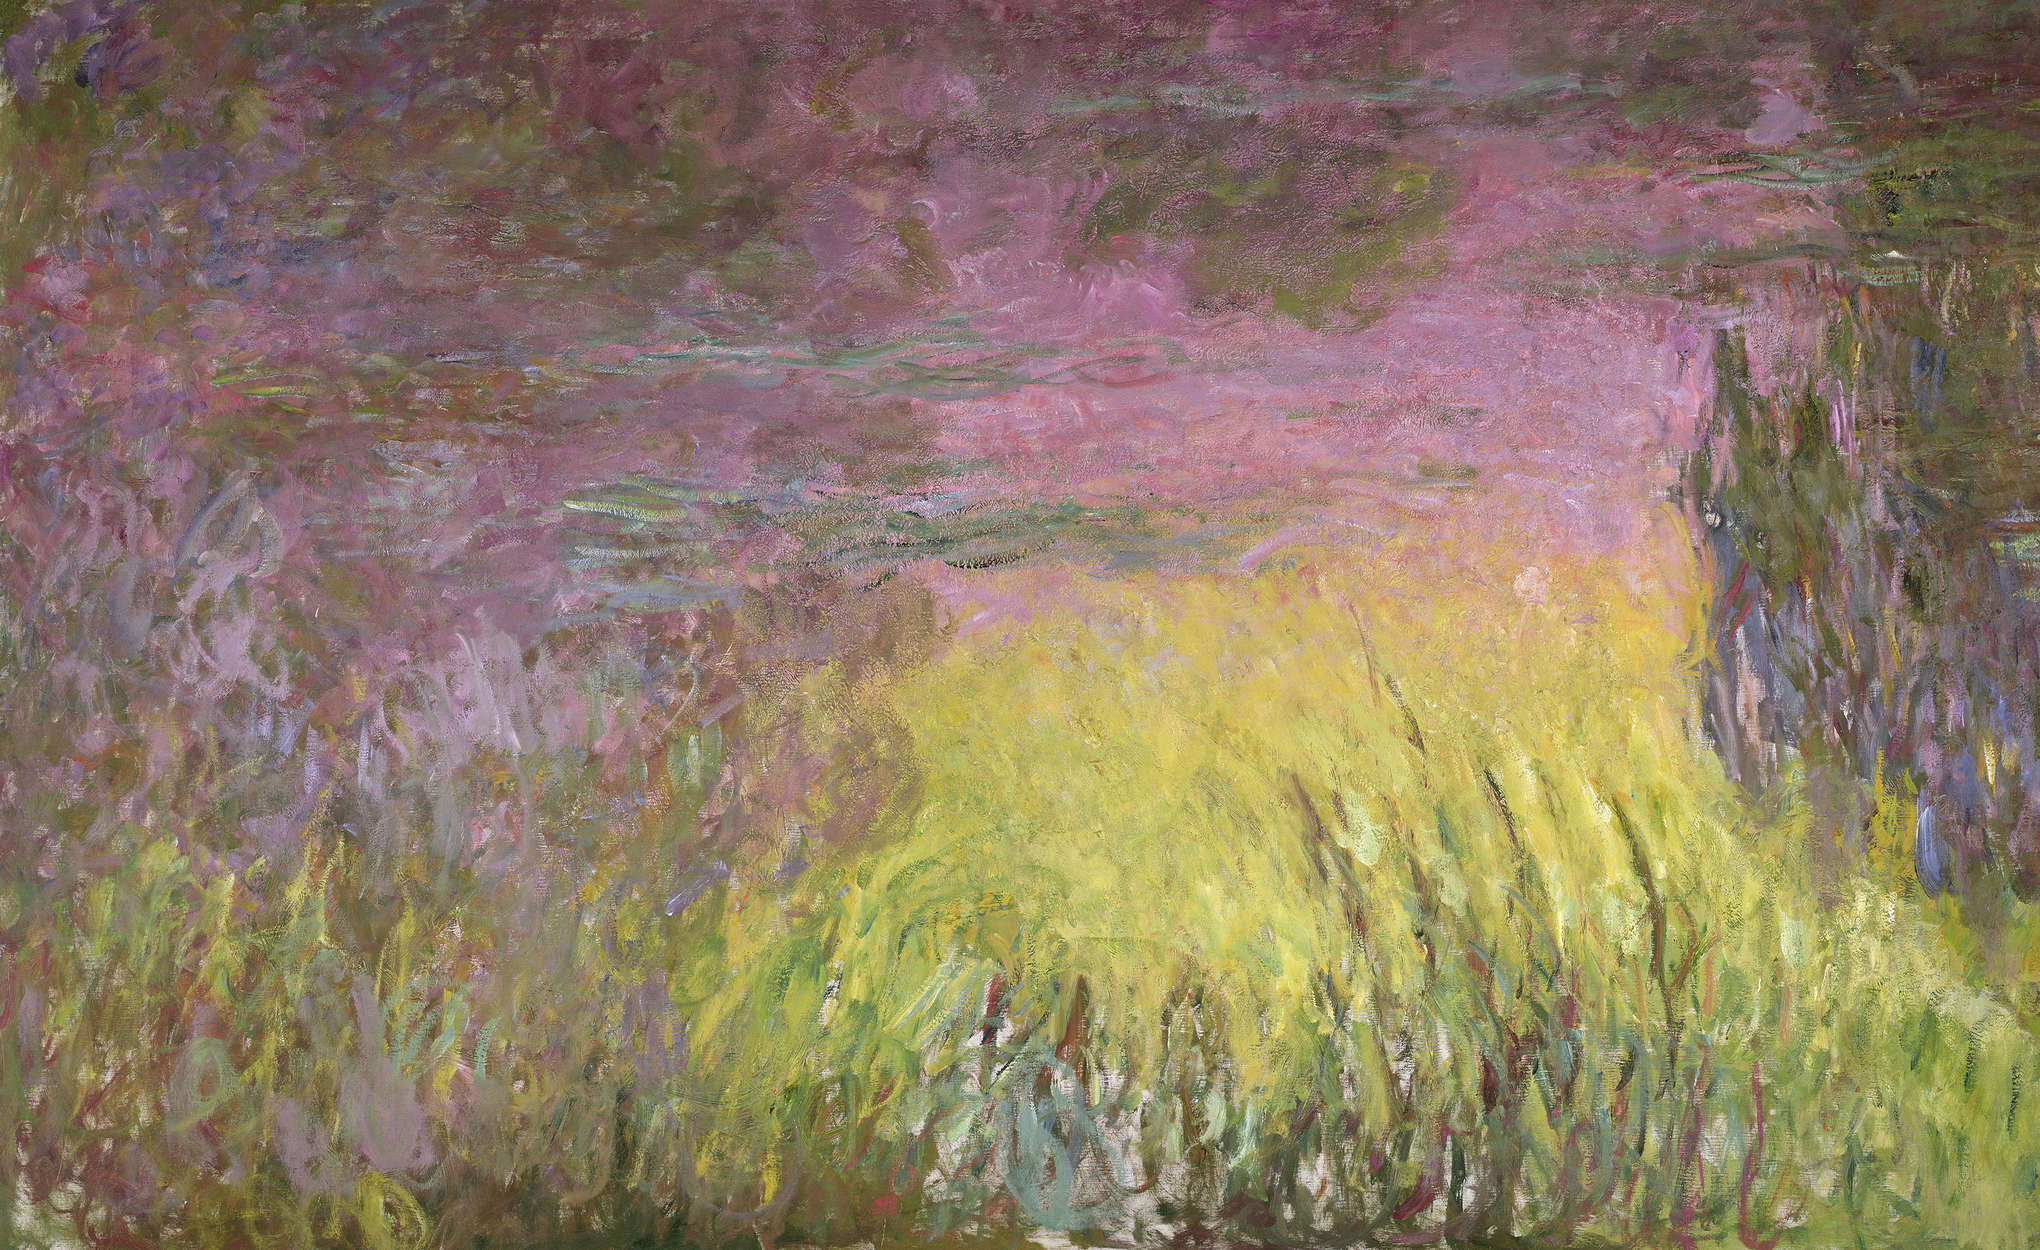             Papier peint panoramique "Nymphéas au coucher du soleil" de Claude Monet
        